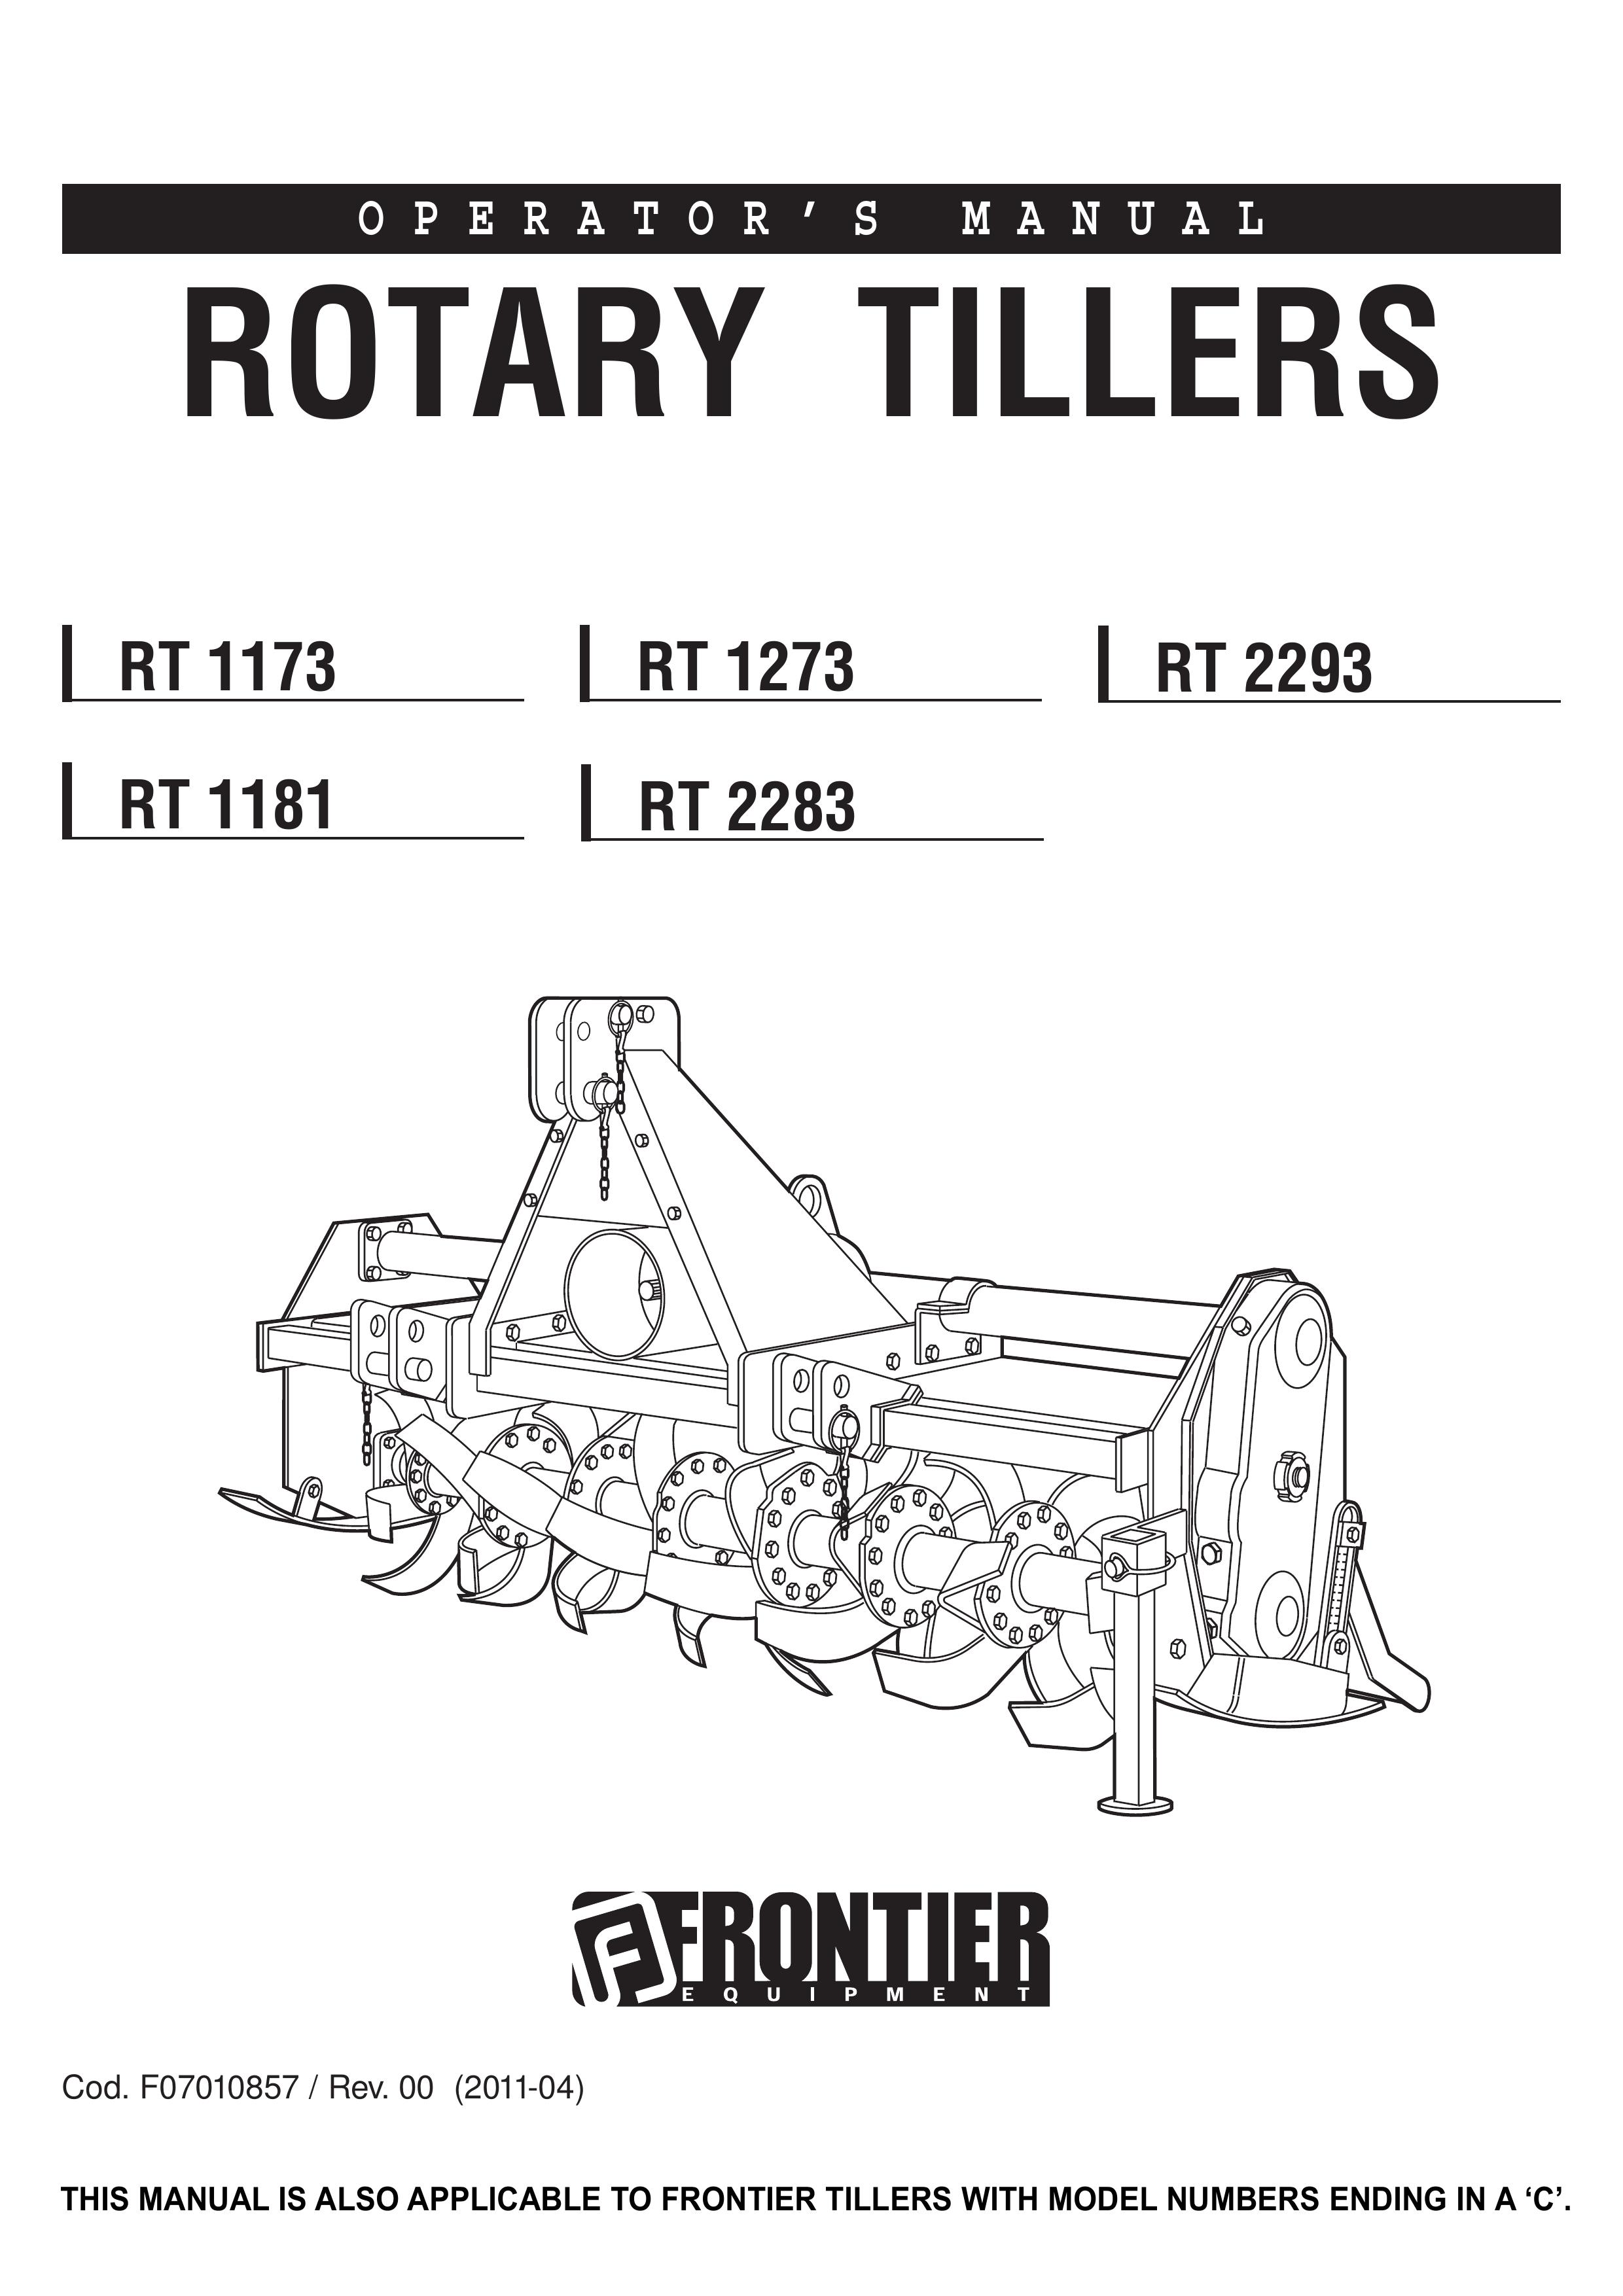 John Deere RT 1173 Tiller User Manual